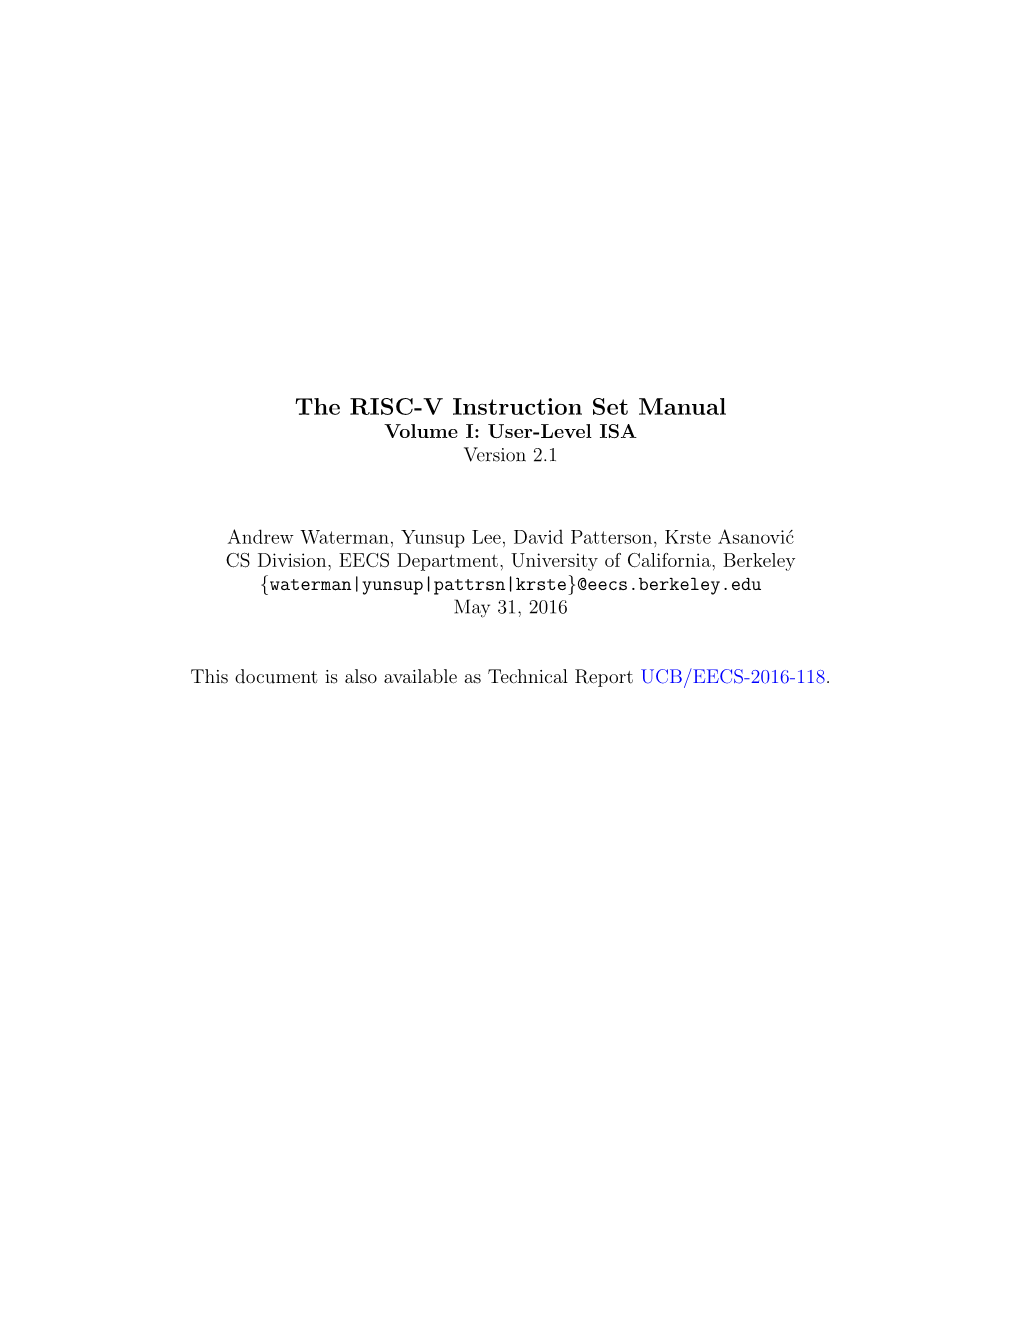 The RISC-V Instruction Set Manual Volume I: User-Level ISA Version 2.1